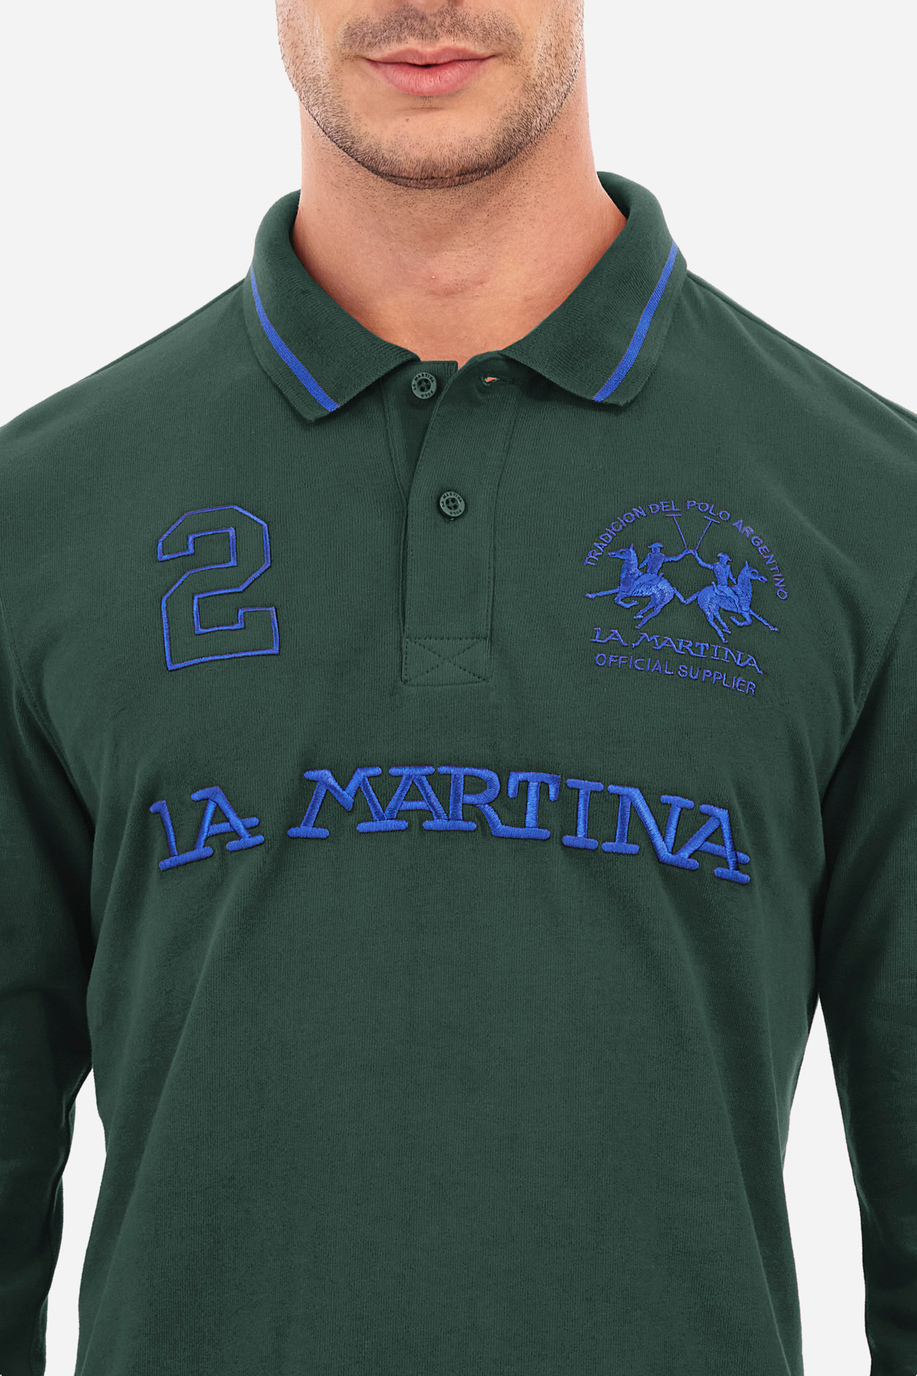 Herren -Poloshirt regular fit - Urbe - Poloshirts | La Martina - Official Online Shop